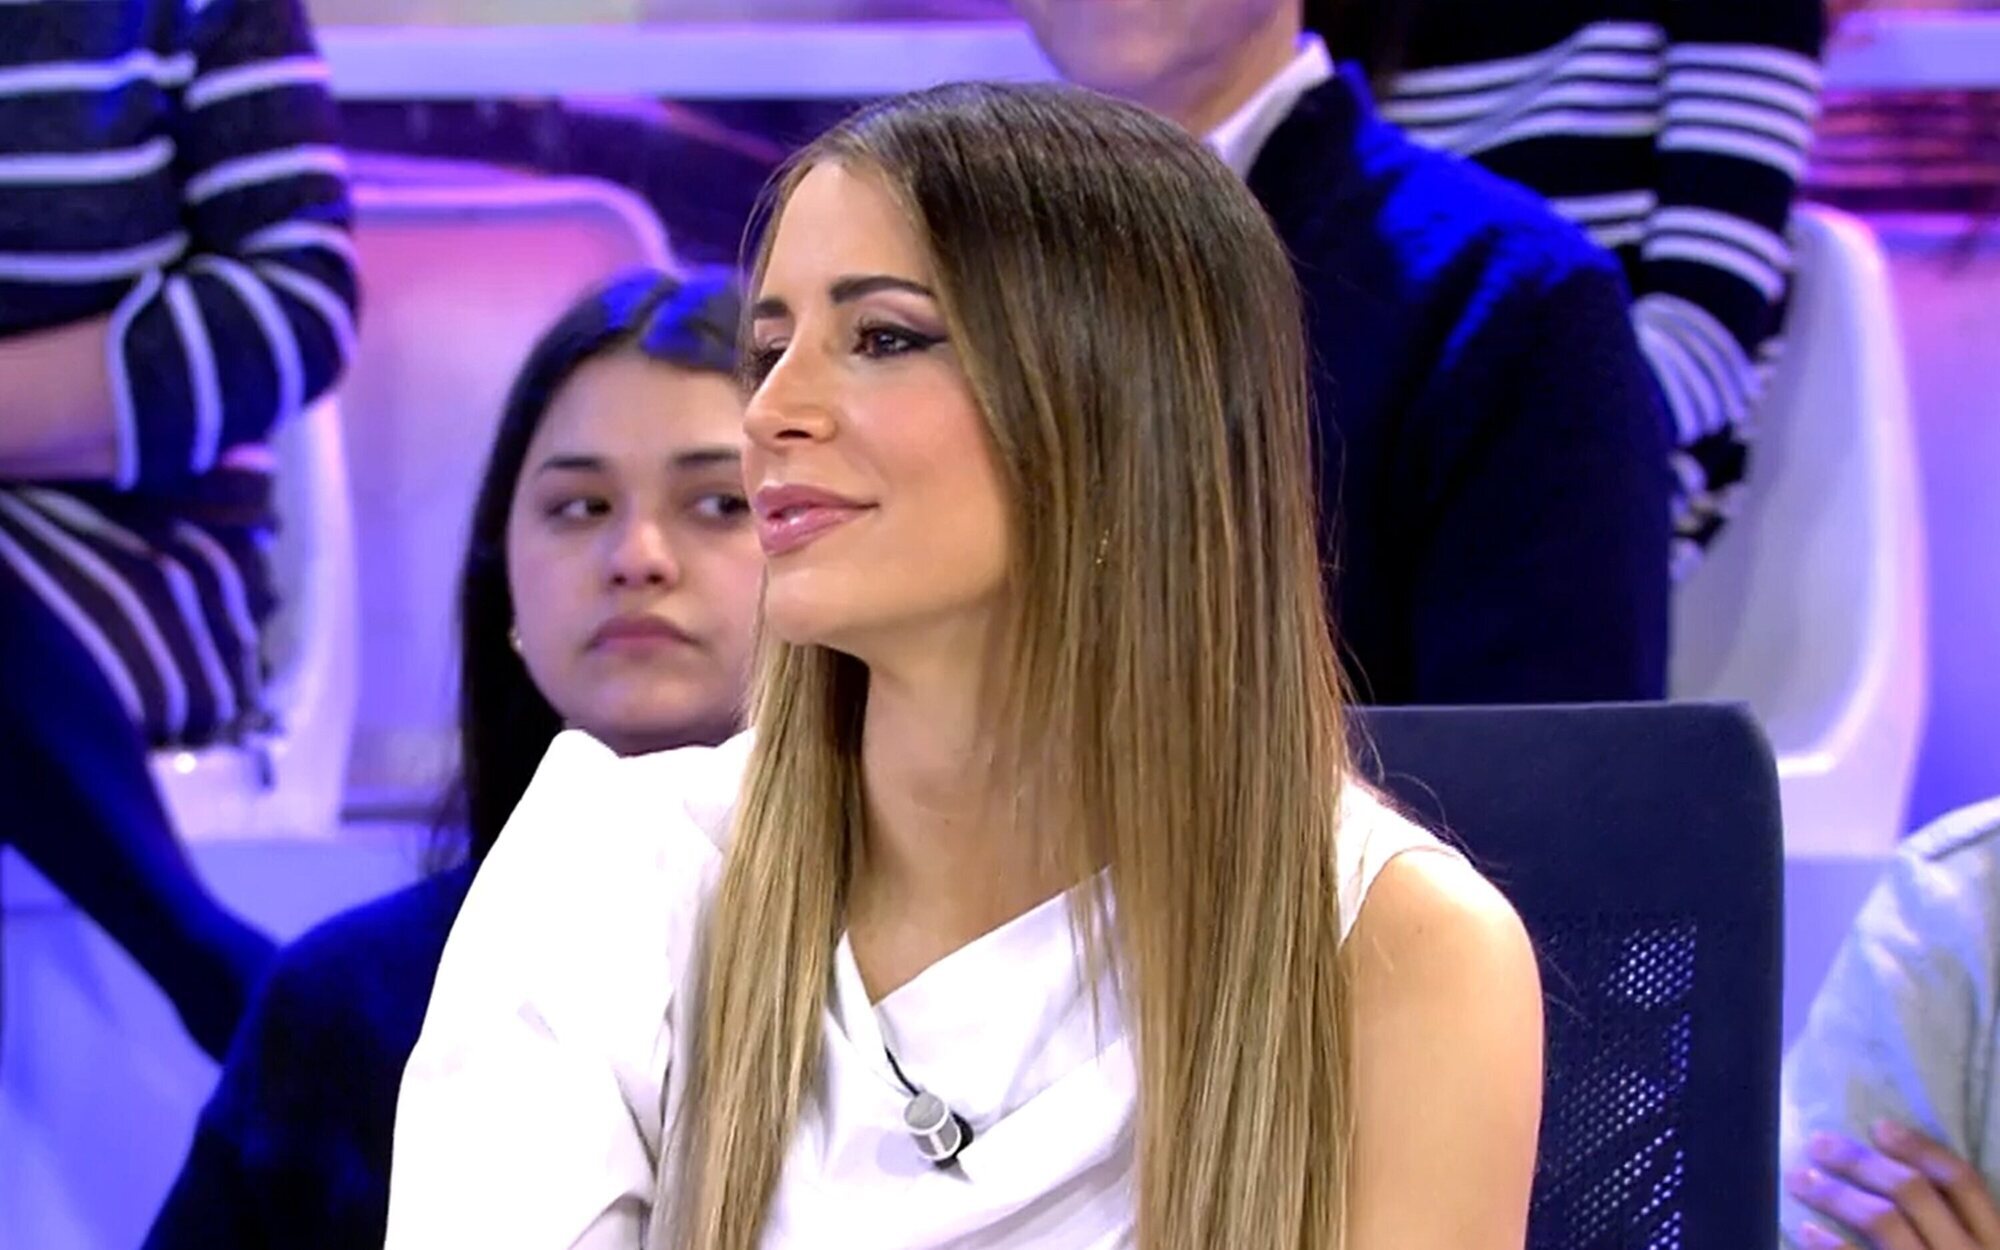 La bronca entre Cristina Porta y Marta Riesco en el directo de 'Sálvame' que Mediaset ha decidido eliminar